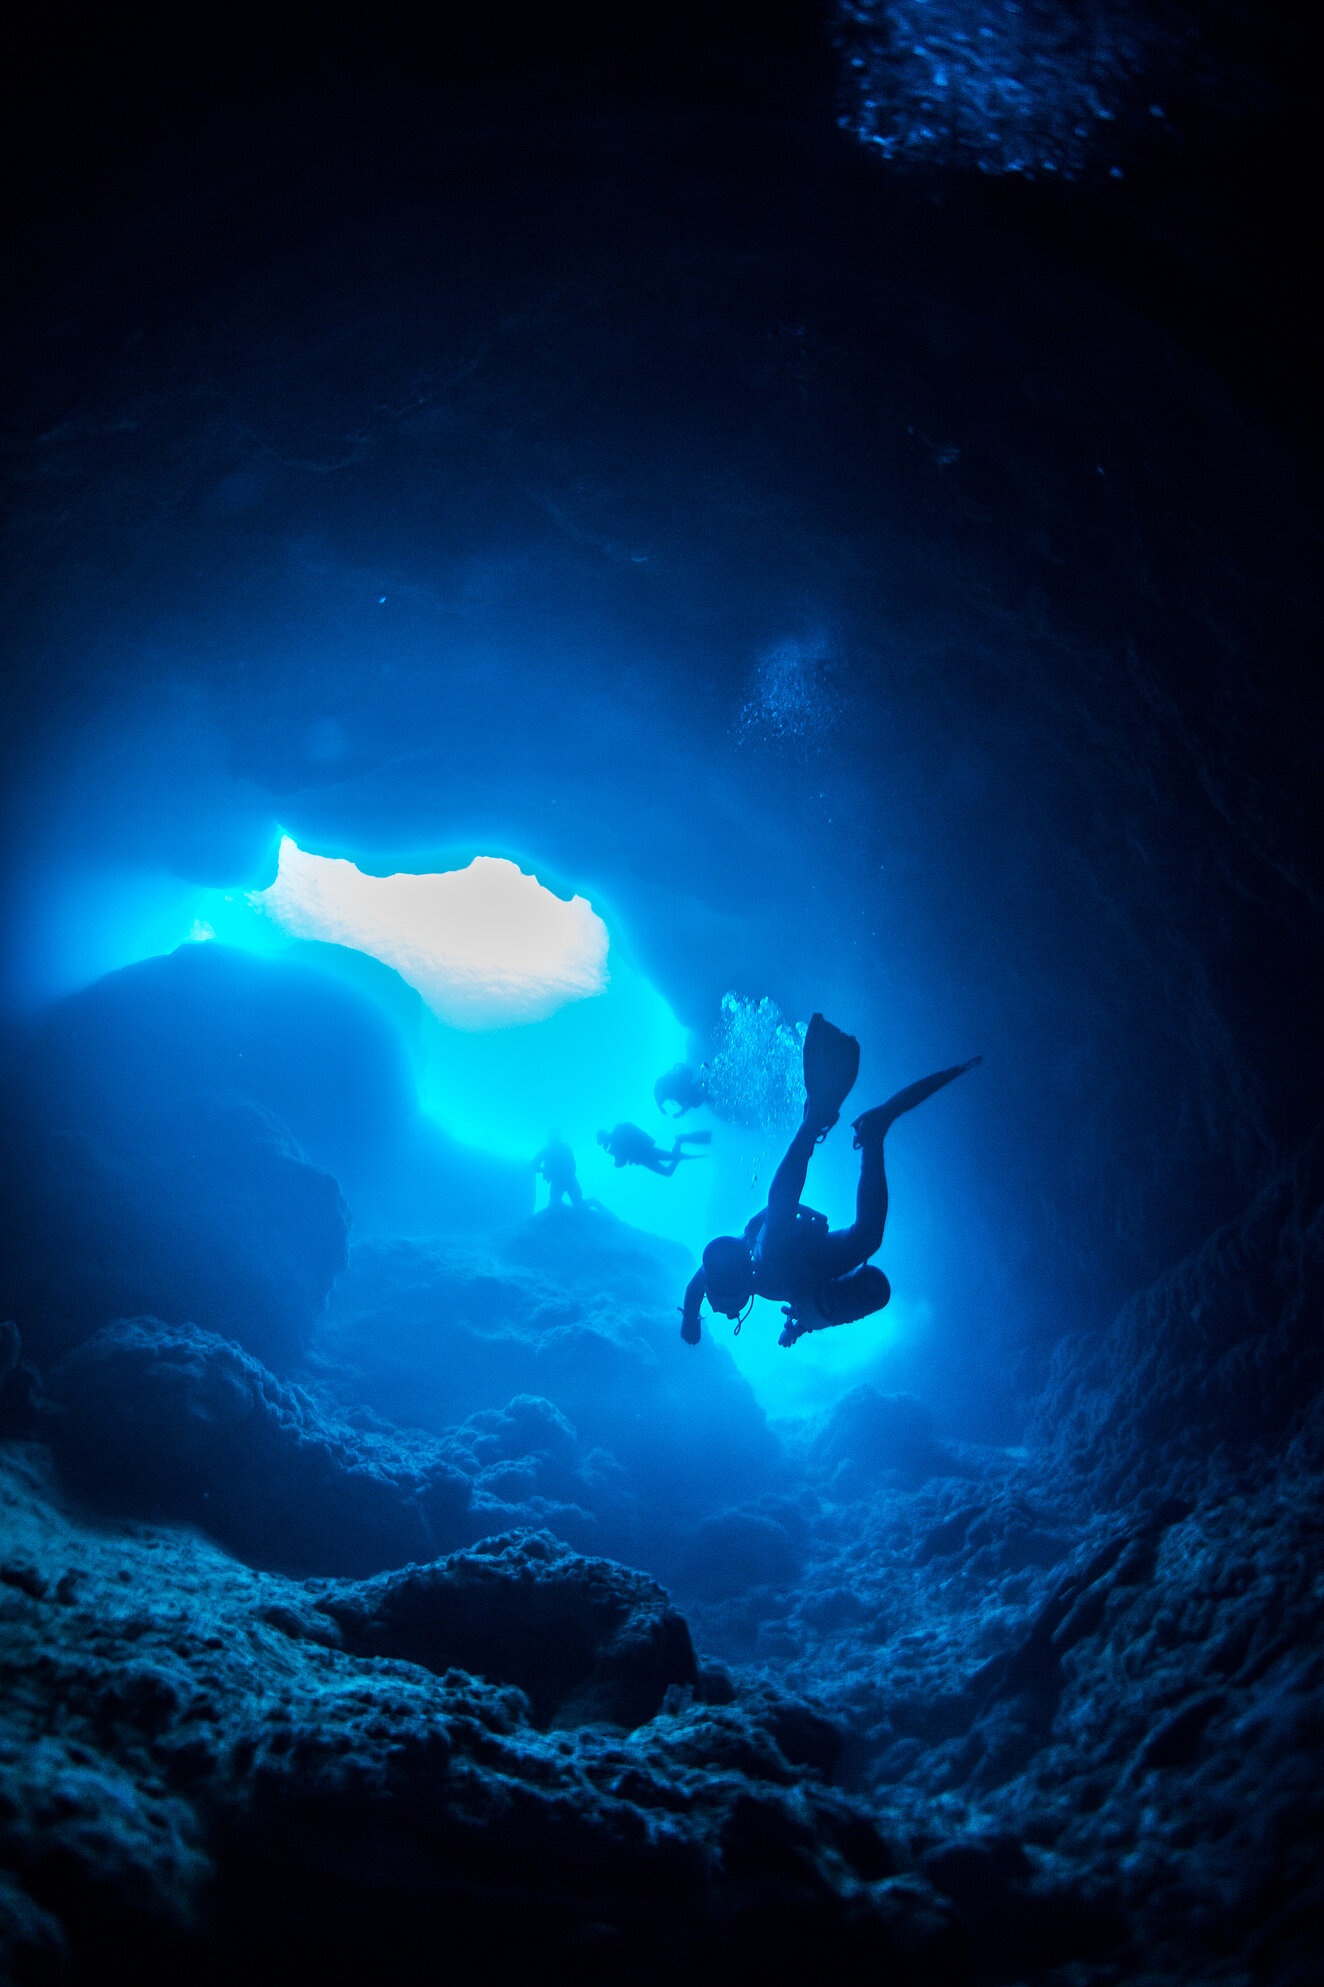 Höhlentaucher unter Wasser © Nudiblue / iStock / Thinkstock